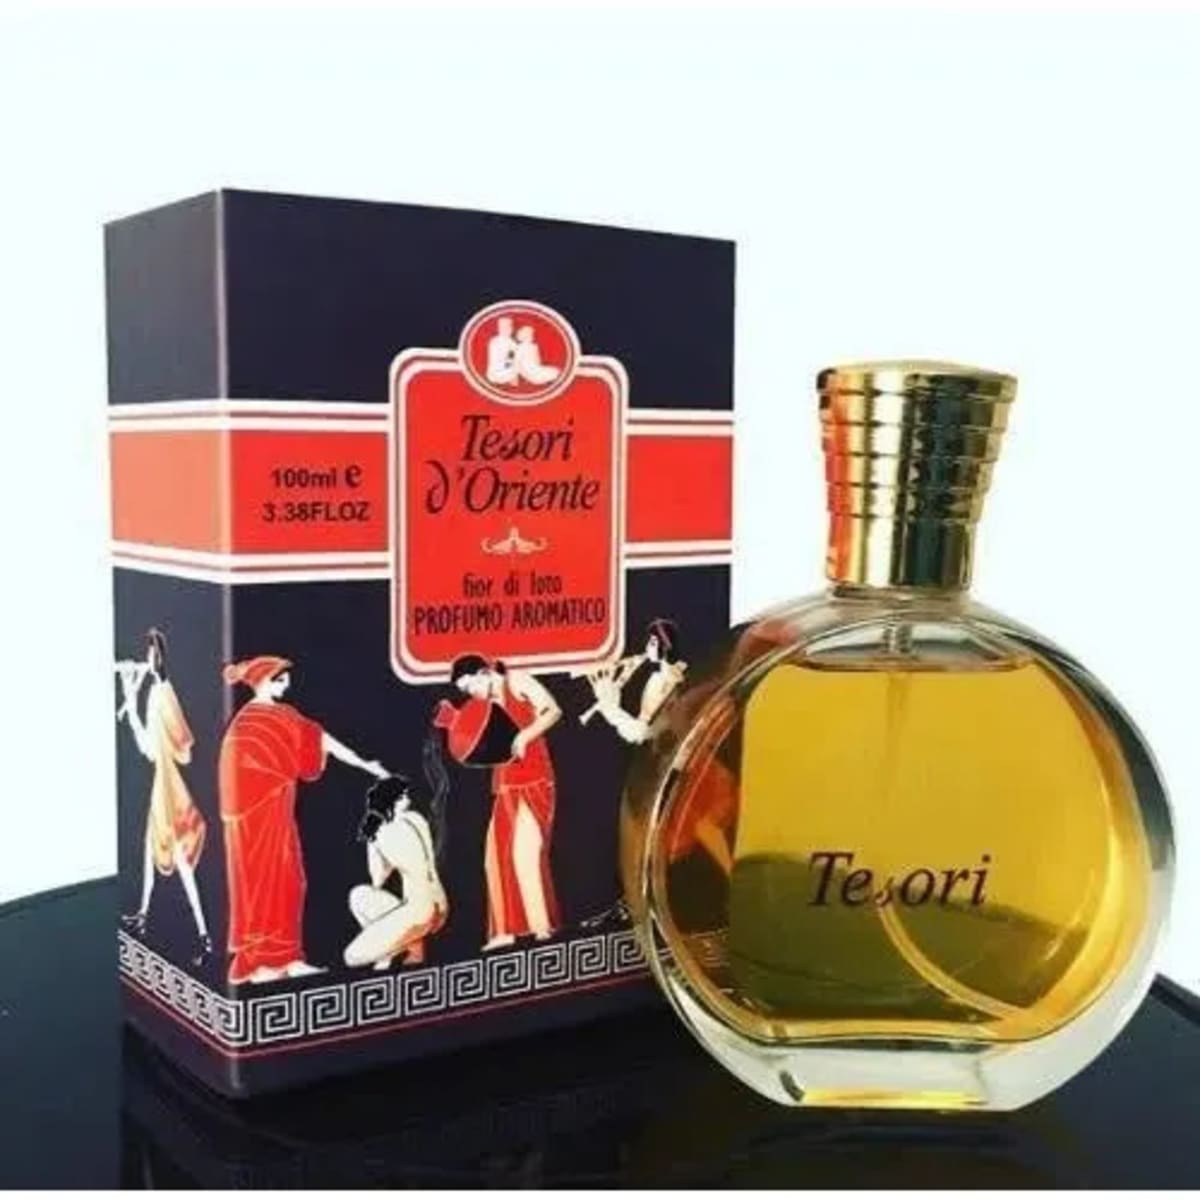 Tesori d'Oriente perfumes and fragrances